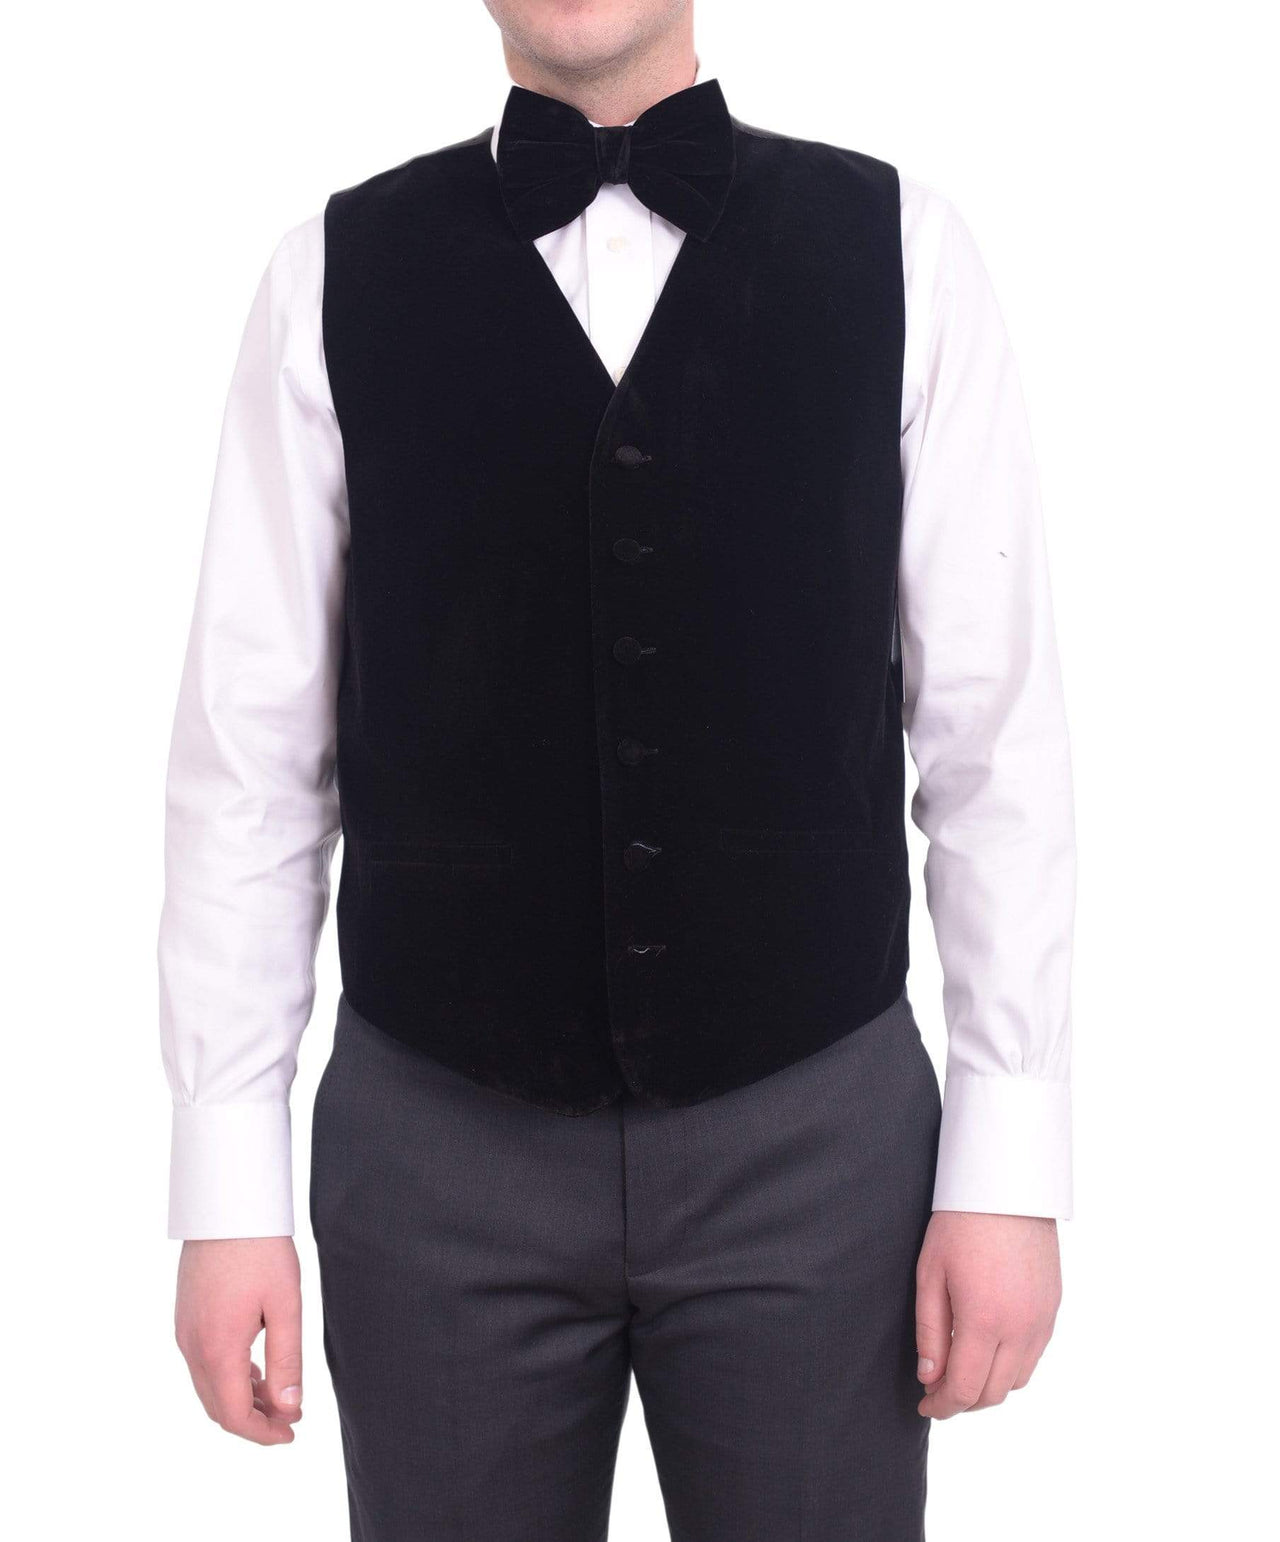 Steven Land Solid Black Velour Six Button Vest With Necktie & Bowtie Set - The Suit Depot